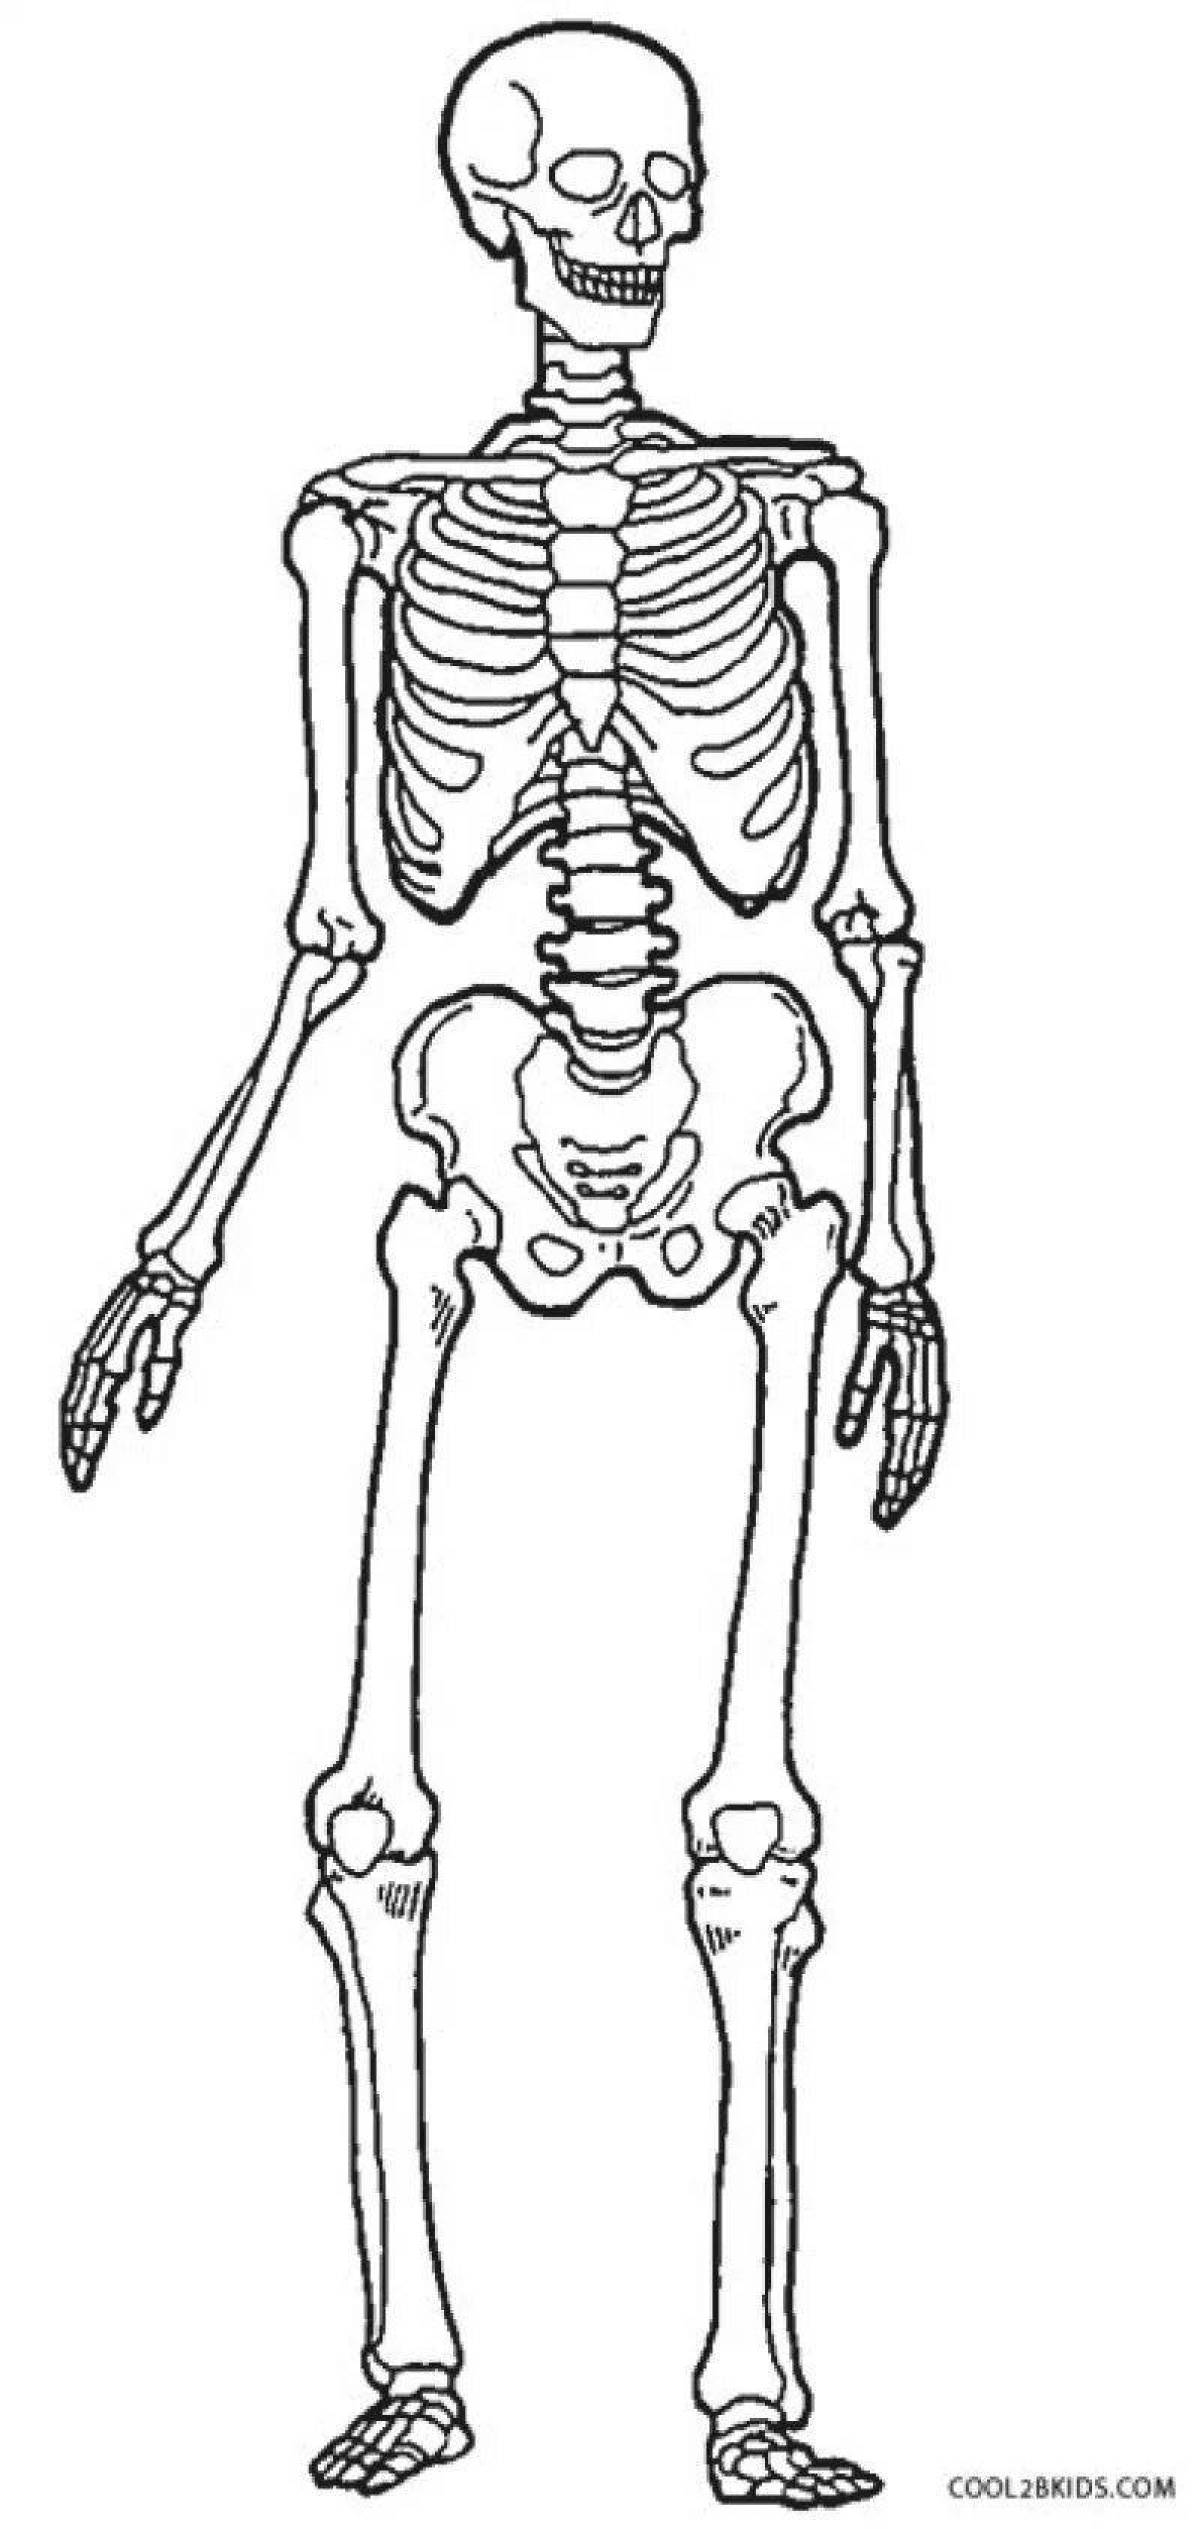 Увлекательная раскраска человеческого скелета